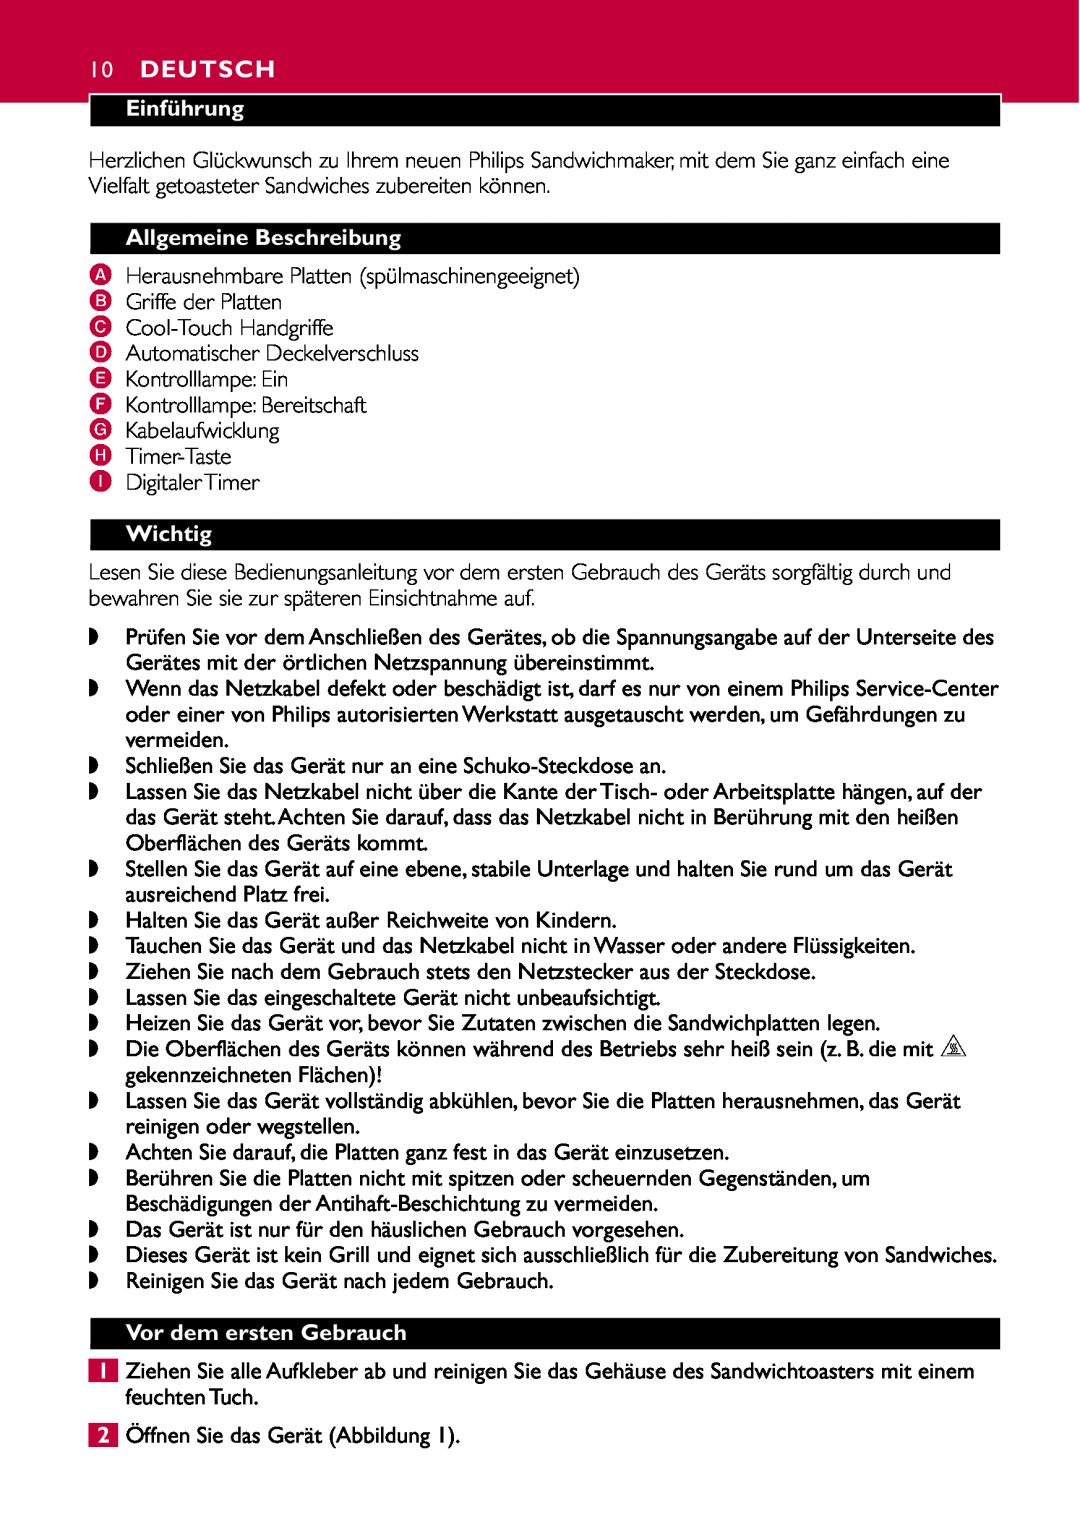 Philips HD2415 manual Deutsch, Einführung, Allgemeine Beschreibung, Wichtig, Vor dem ersten Gebrauch 